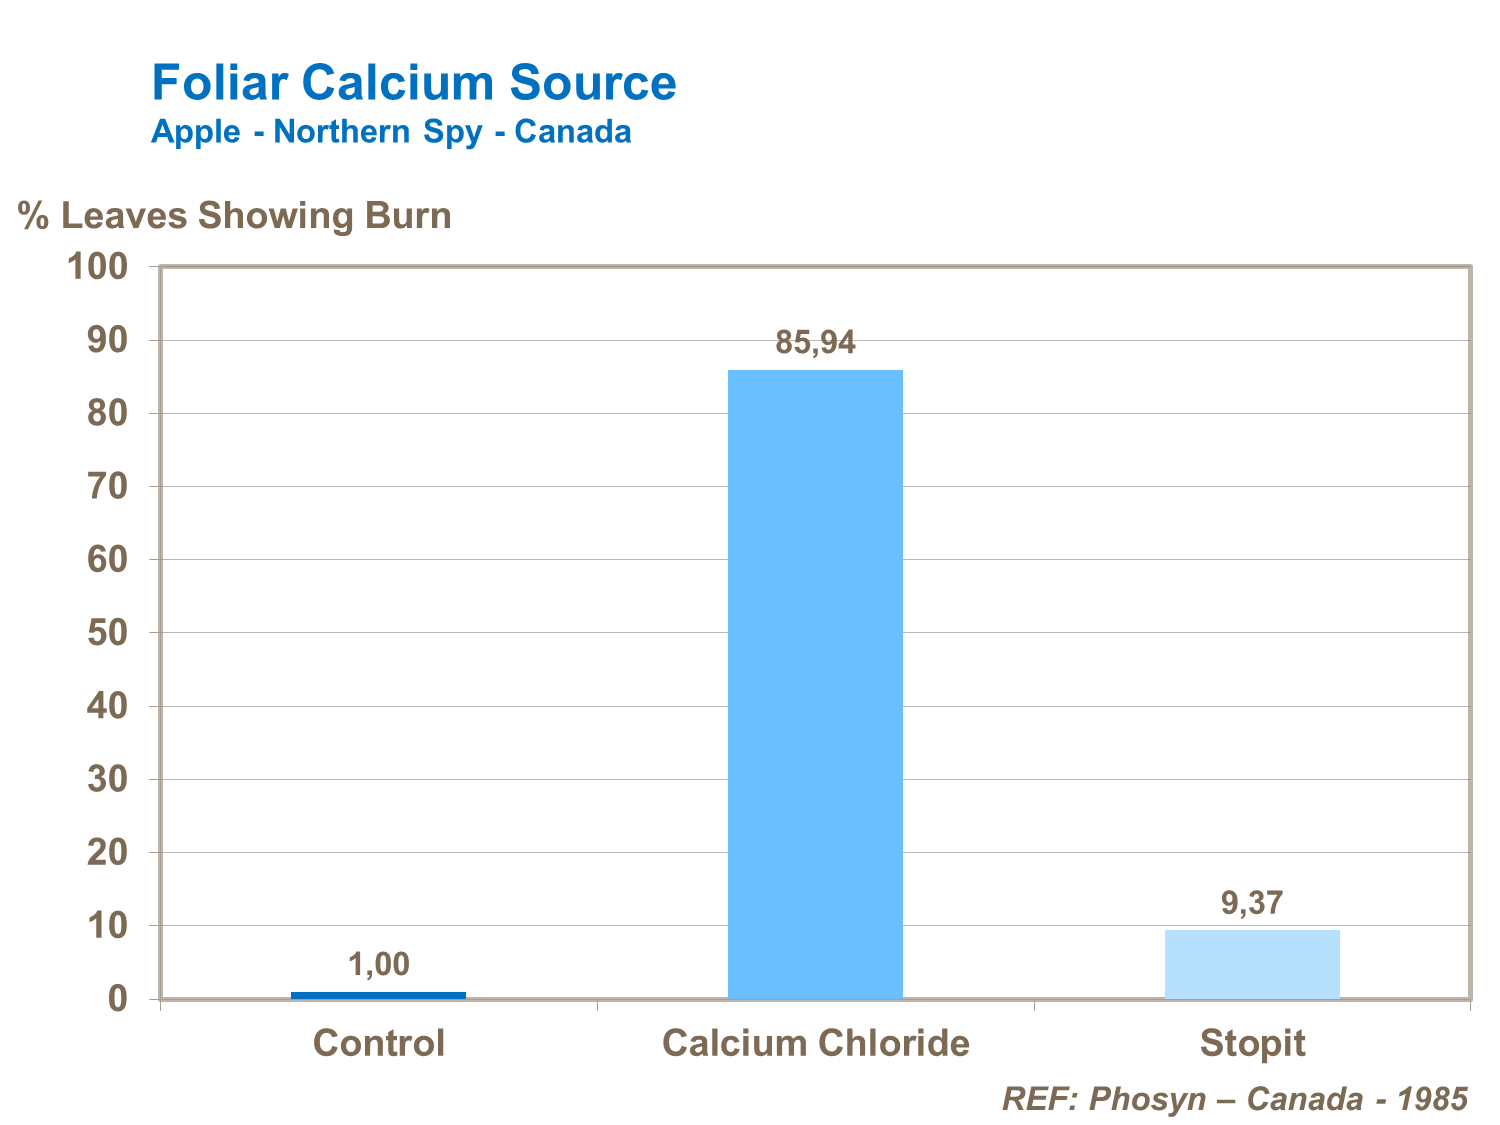 Foilar calcium source